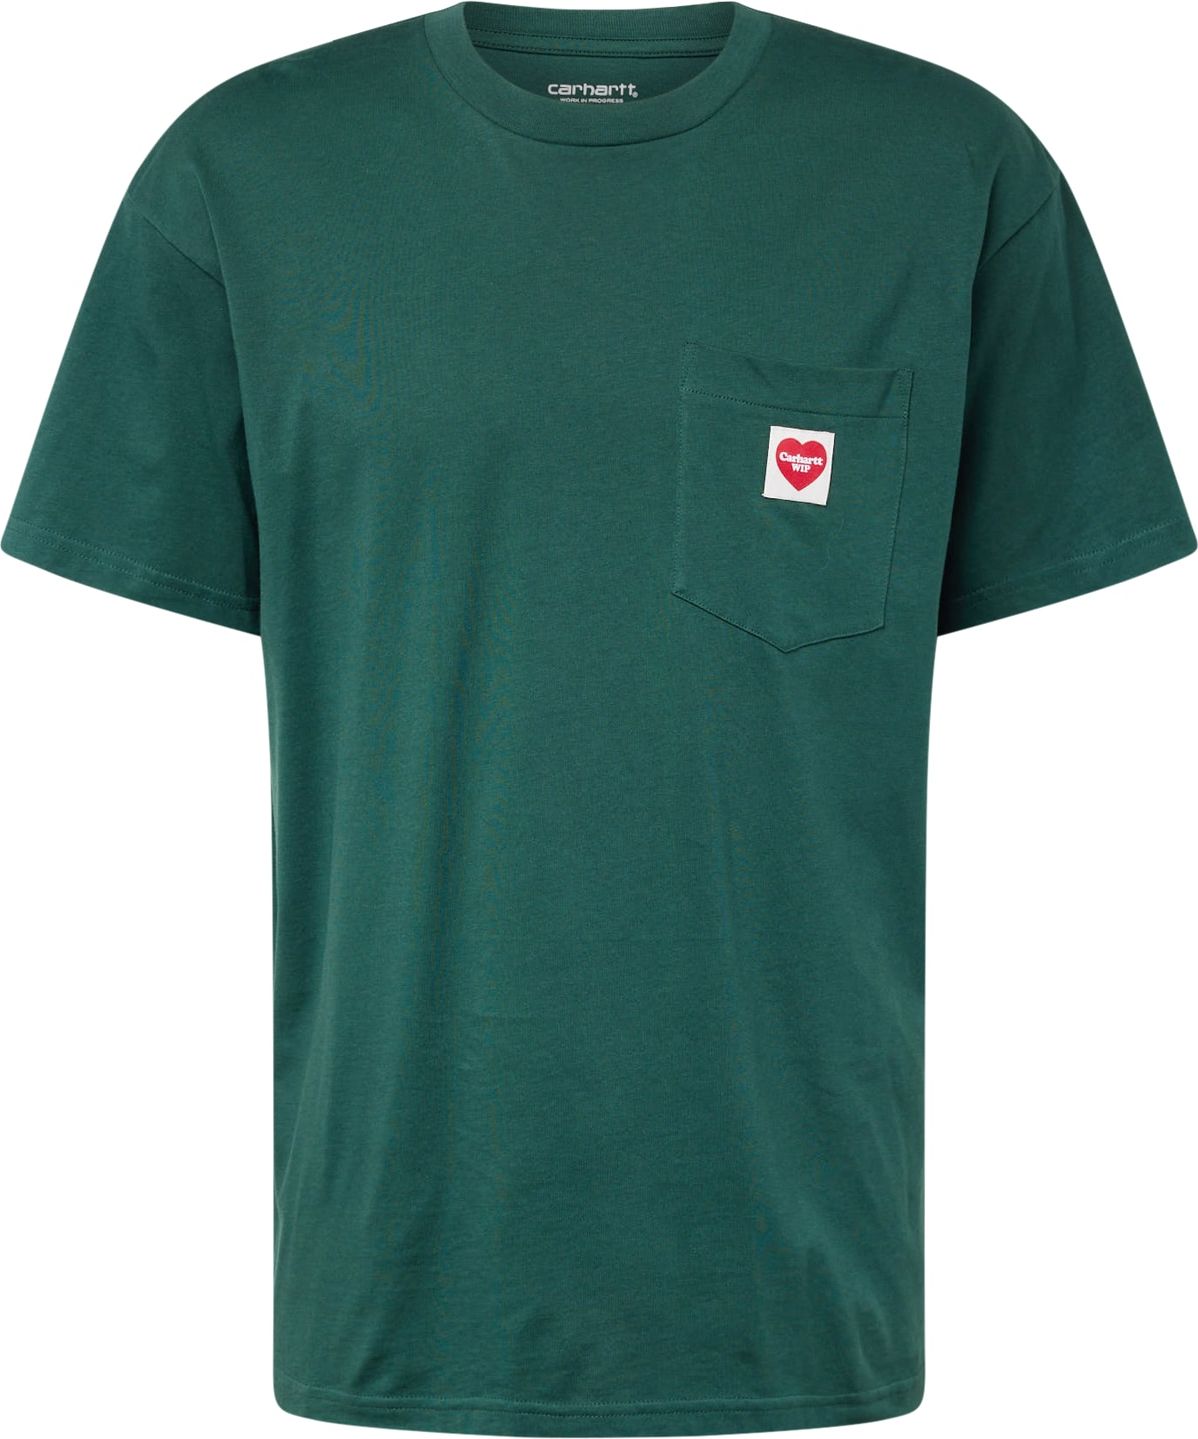 Tričko Carhartt WIP smaragdová / červená / bílá